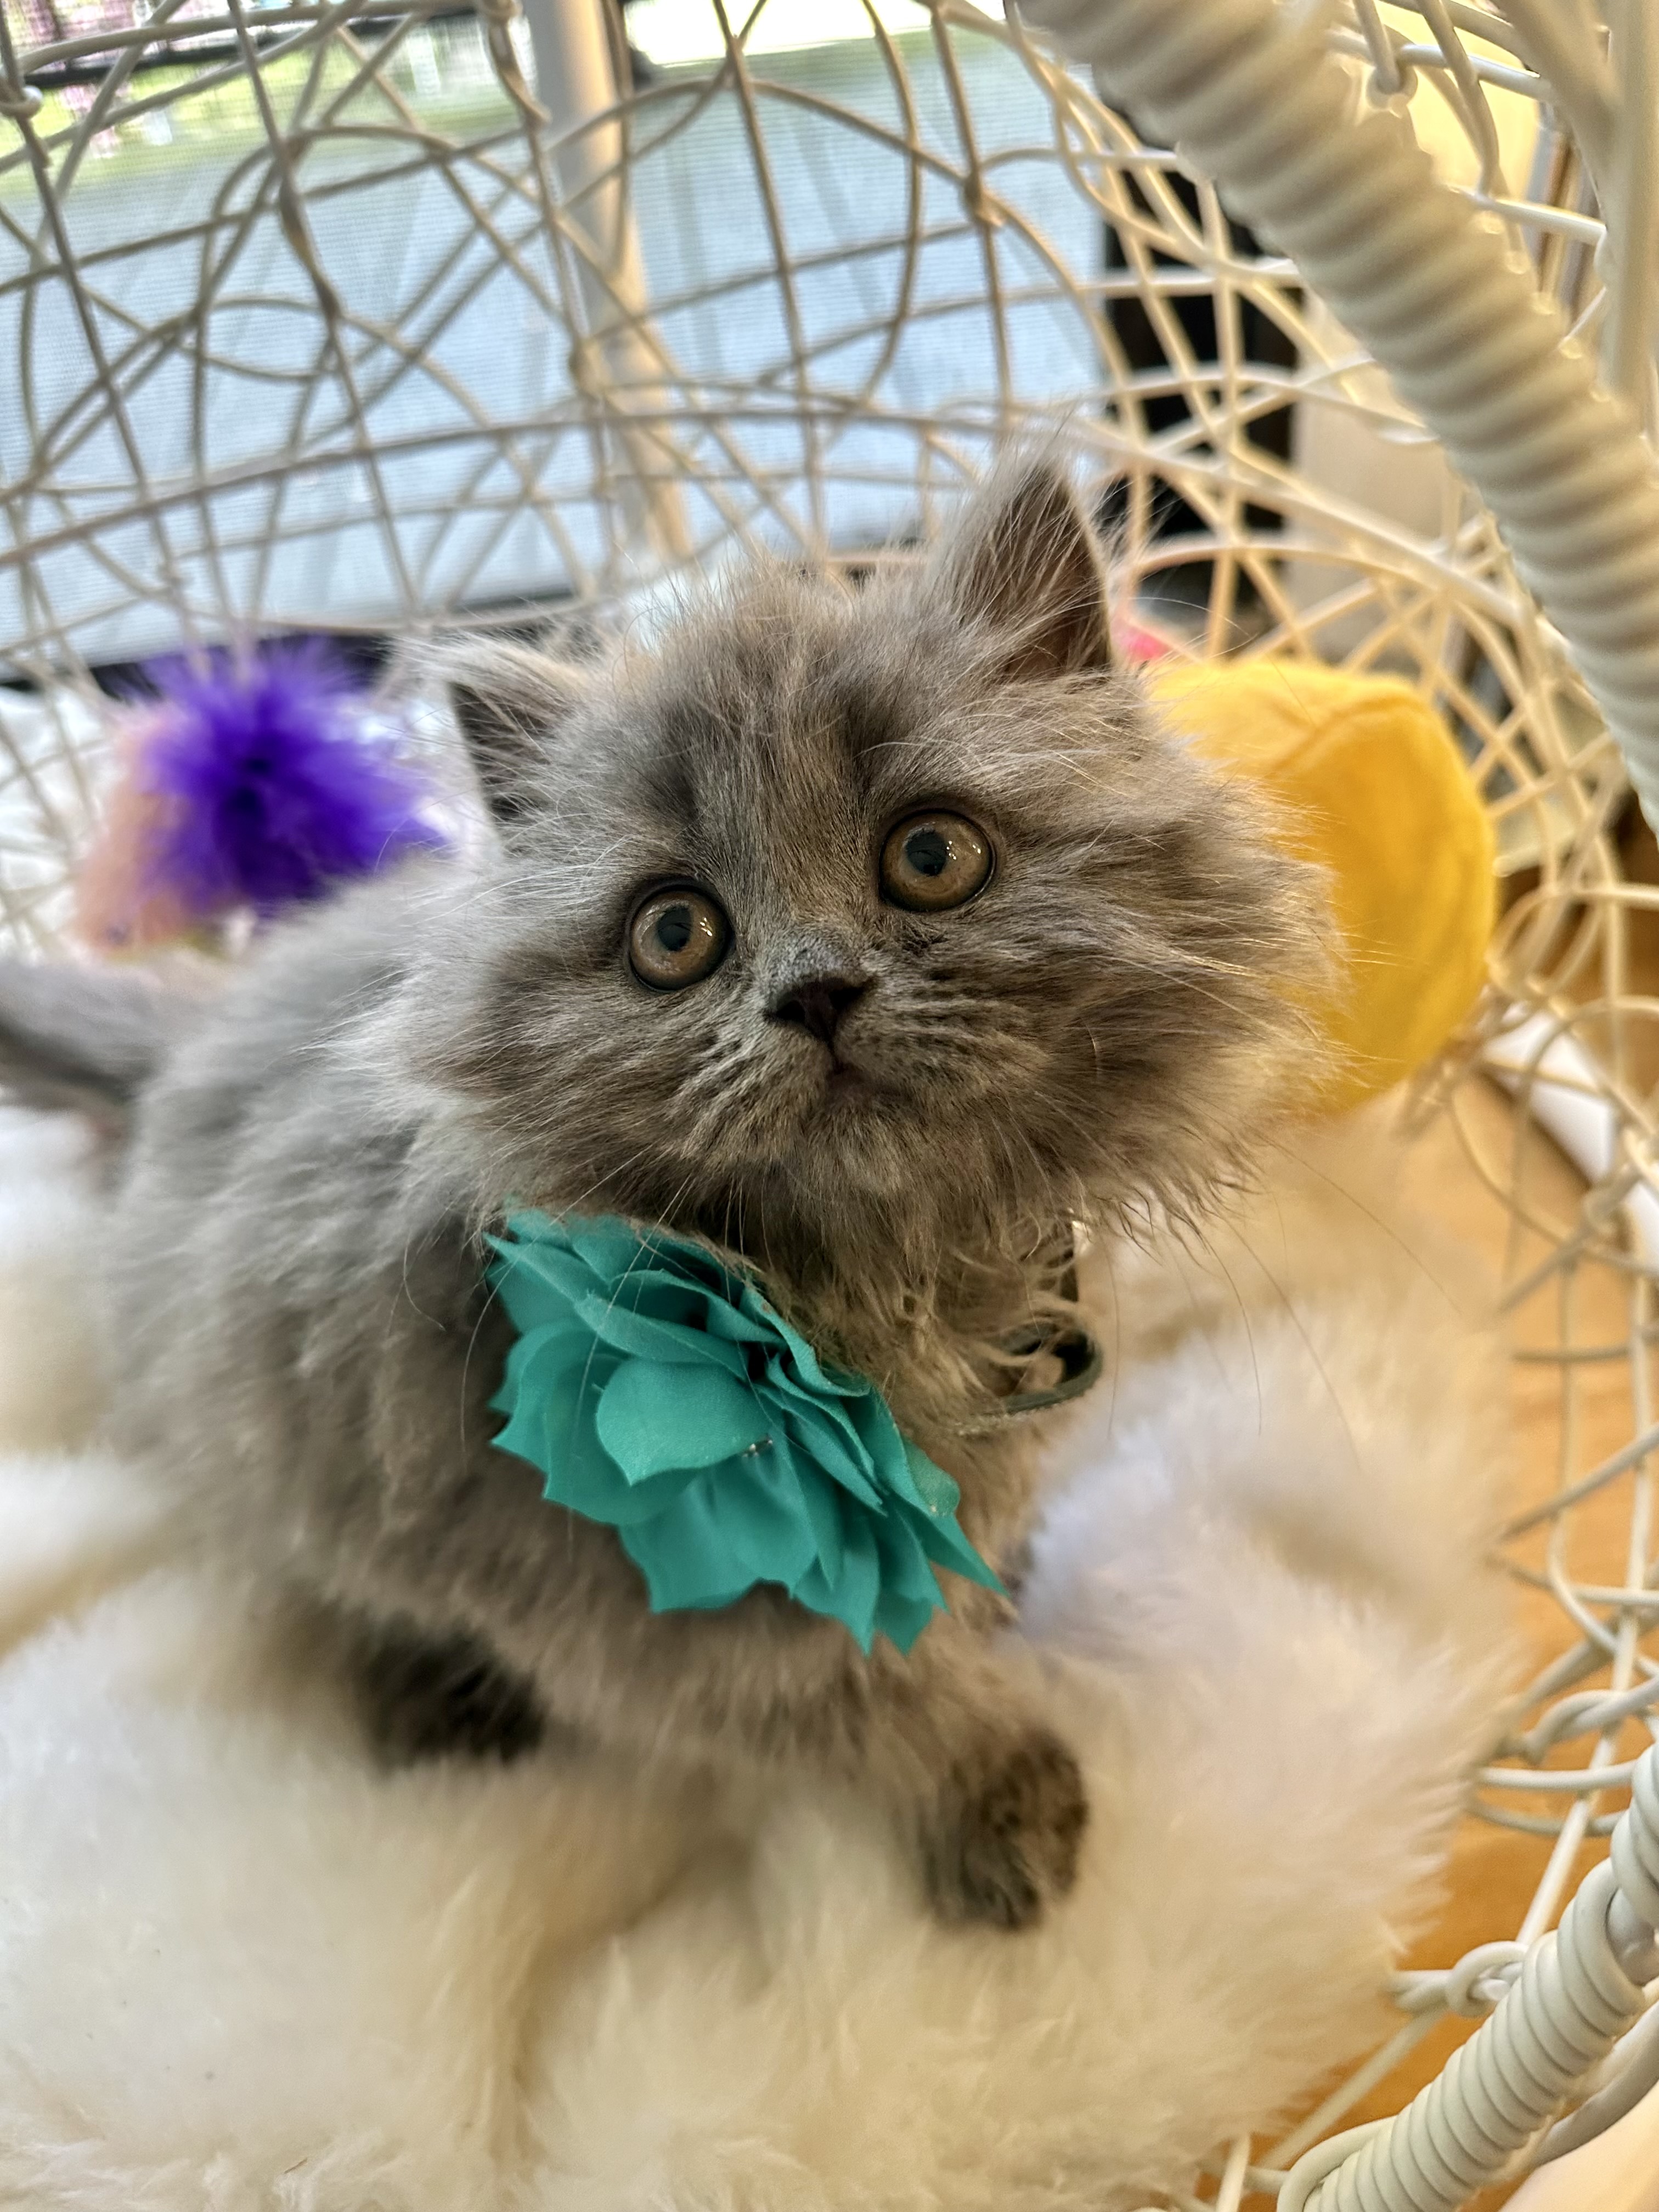 Kendall, Sweet, cuddly, cute British Longhair blue female kitten 10 weeks old